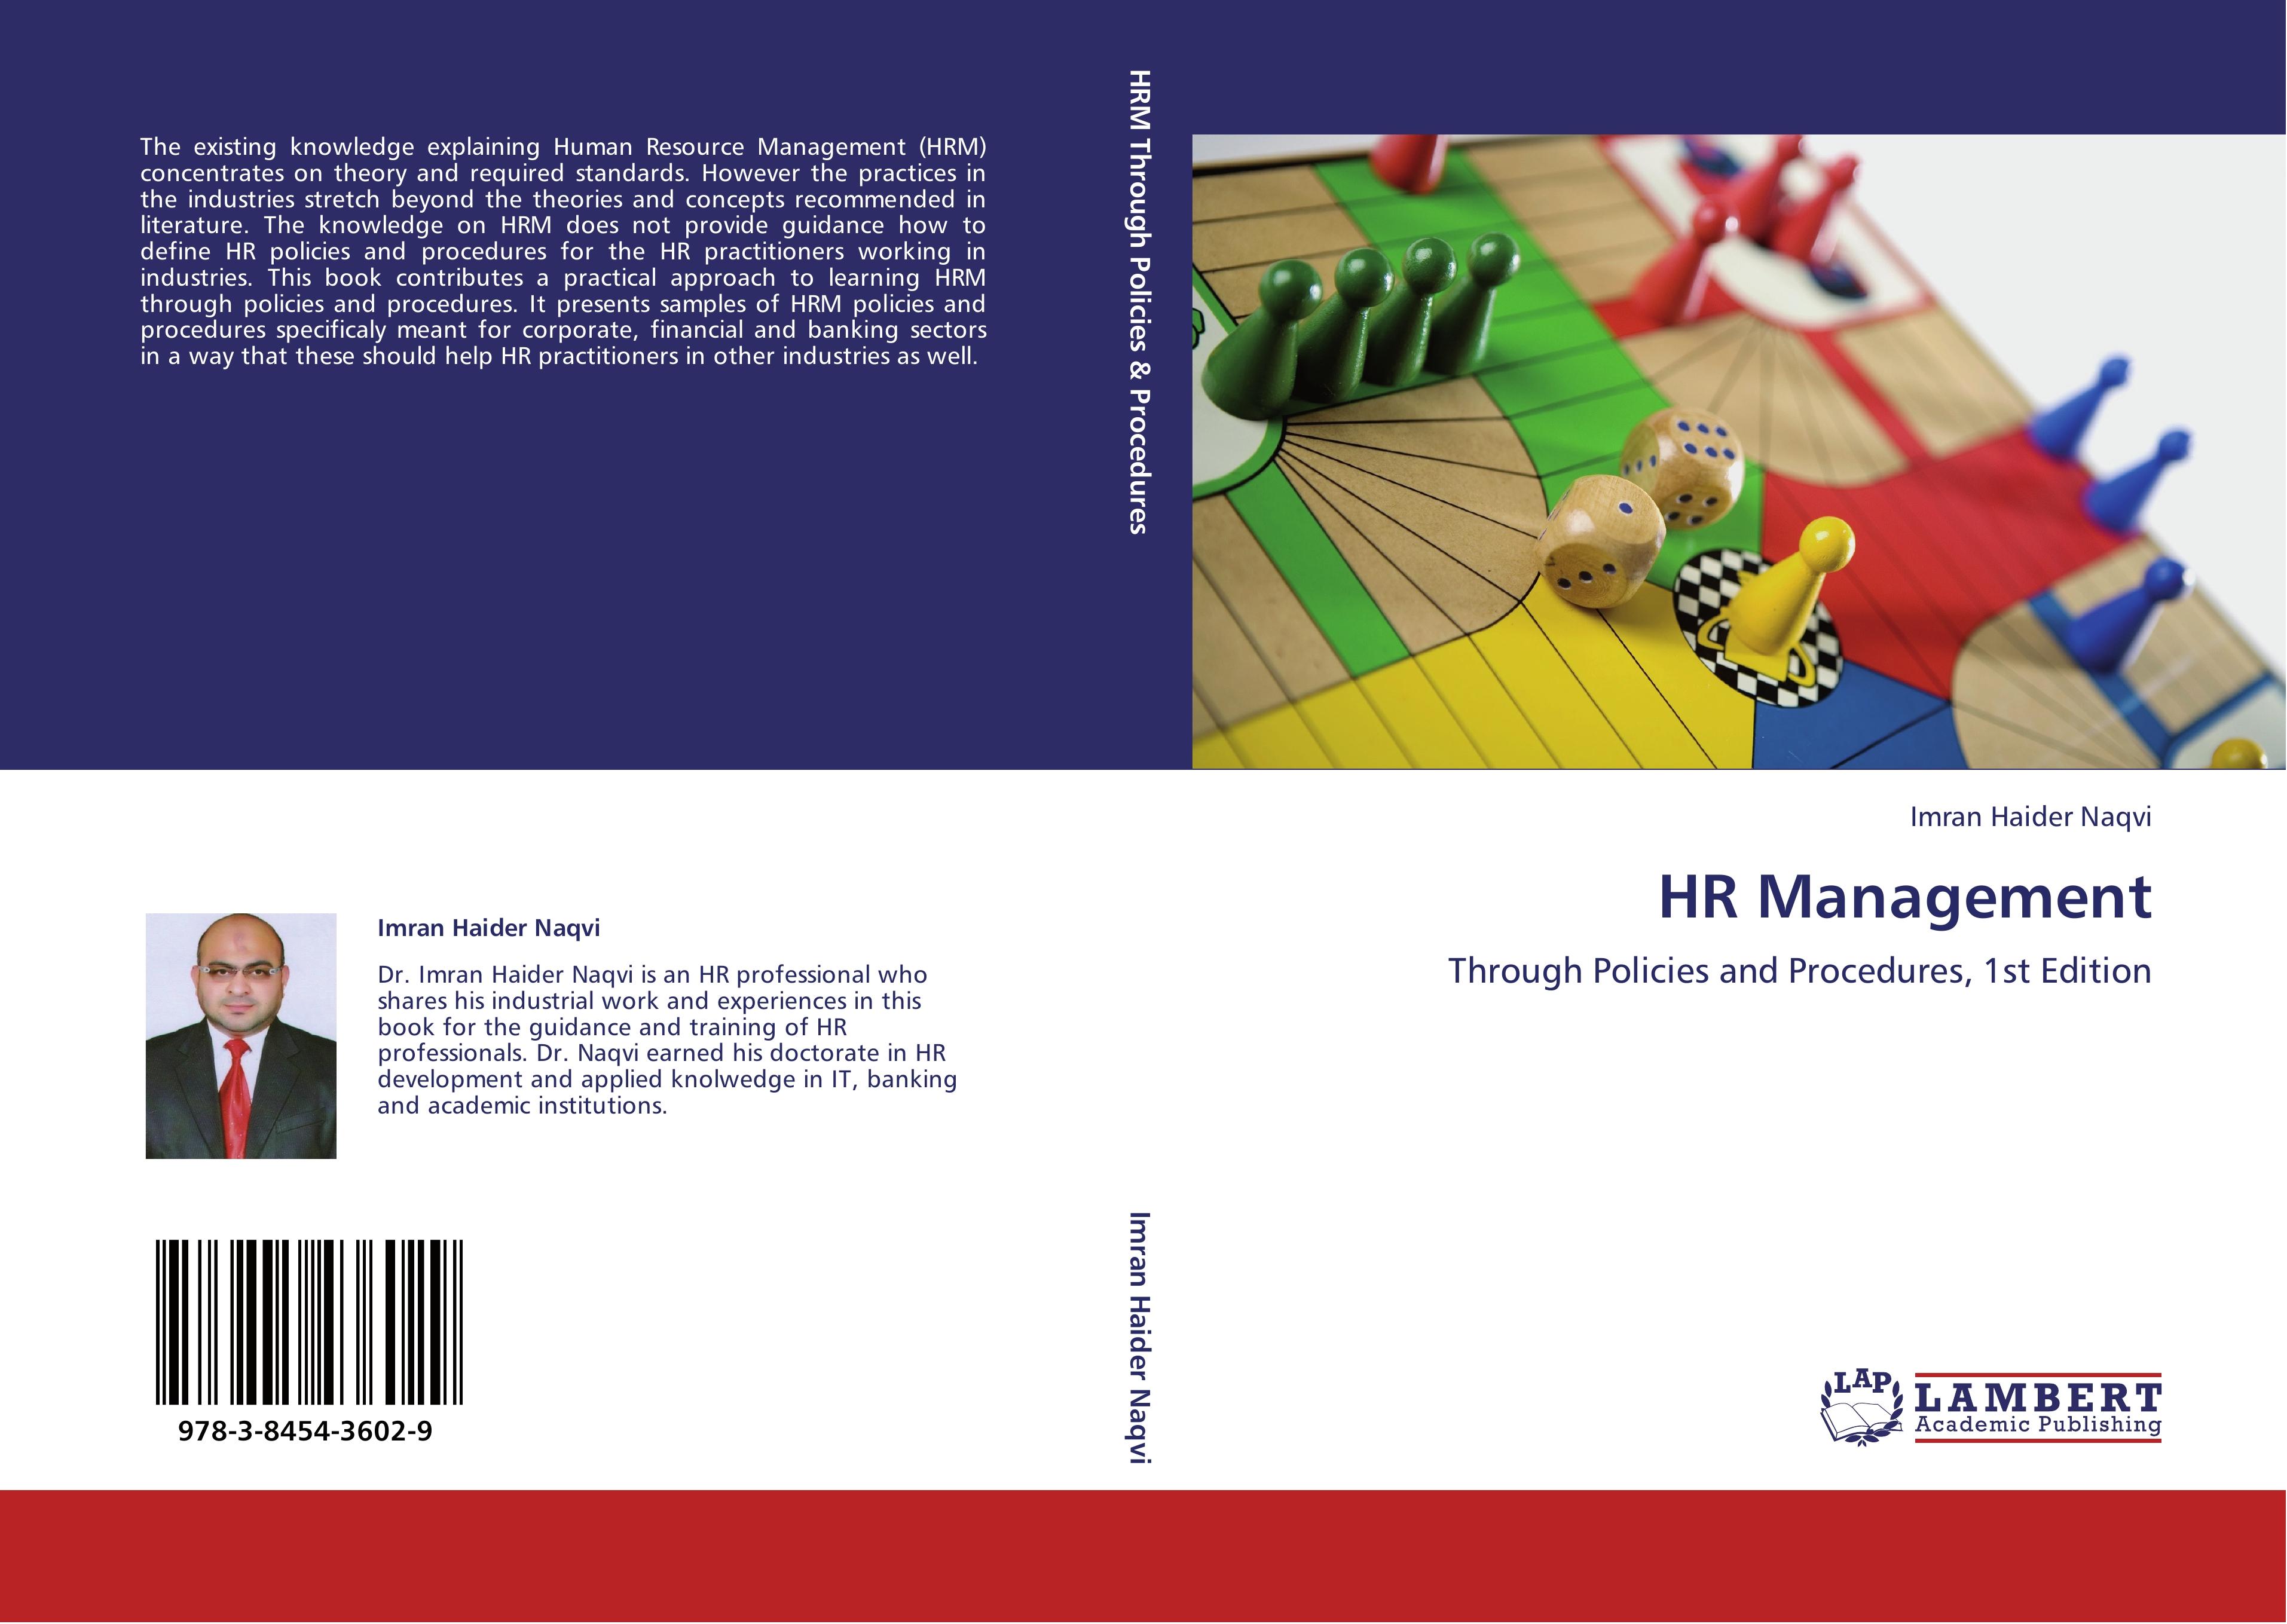 HR Management - Imran Haider Naqvi